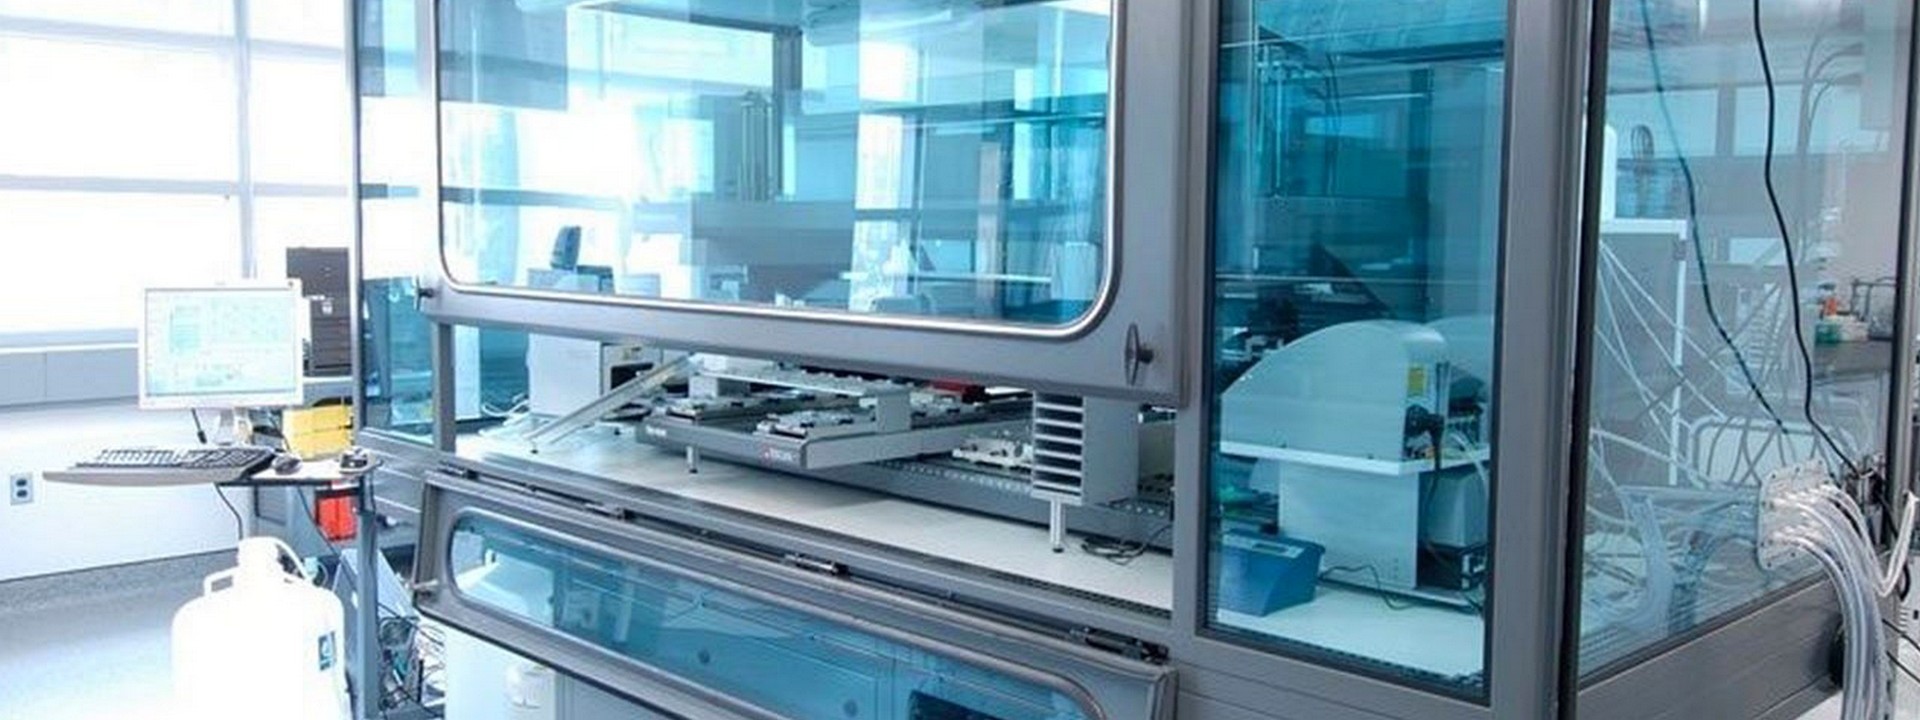 ASTM E1086 Östenitik Paslanmaz Çeliğin Spark Atomik Emisyon Spektrometresi İle Analizi için Standart Test Yöntemi